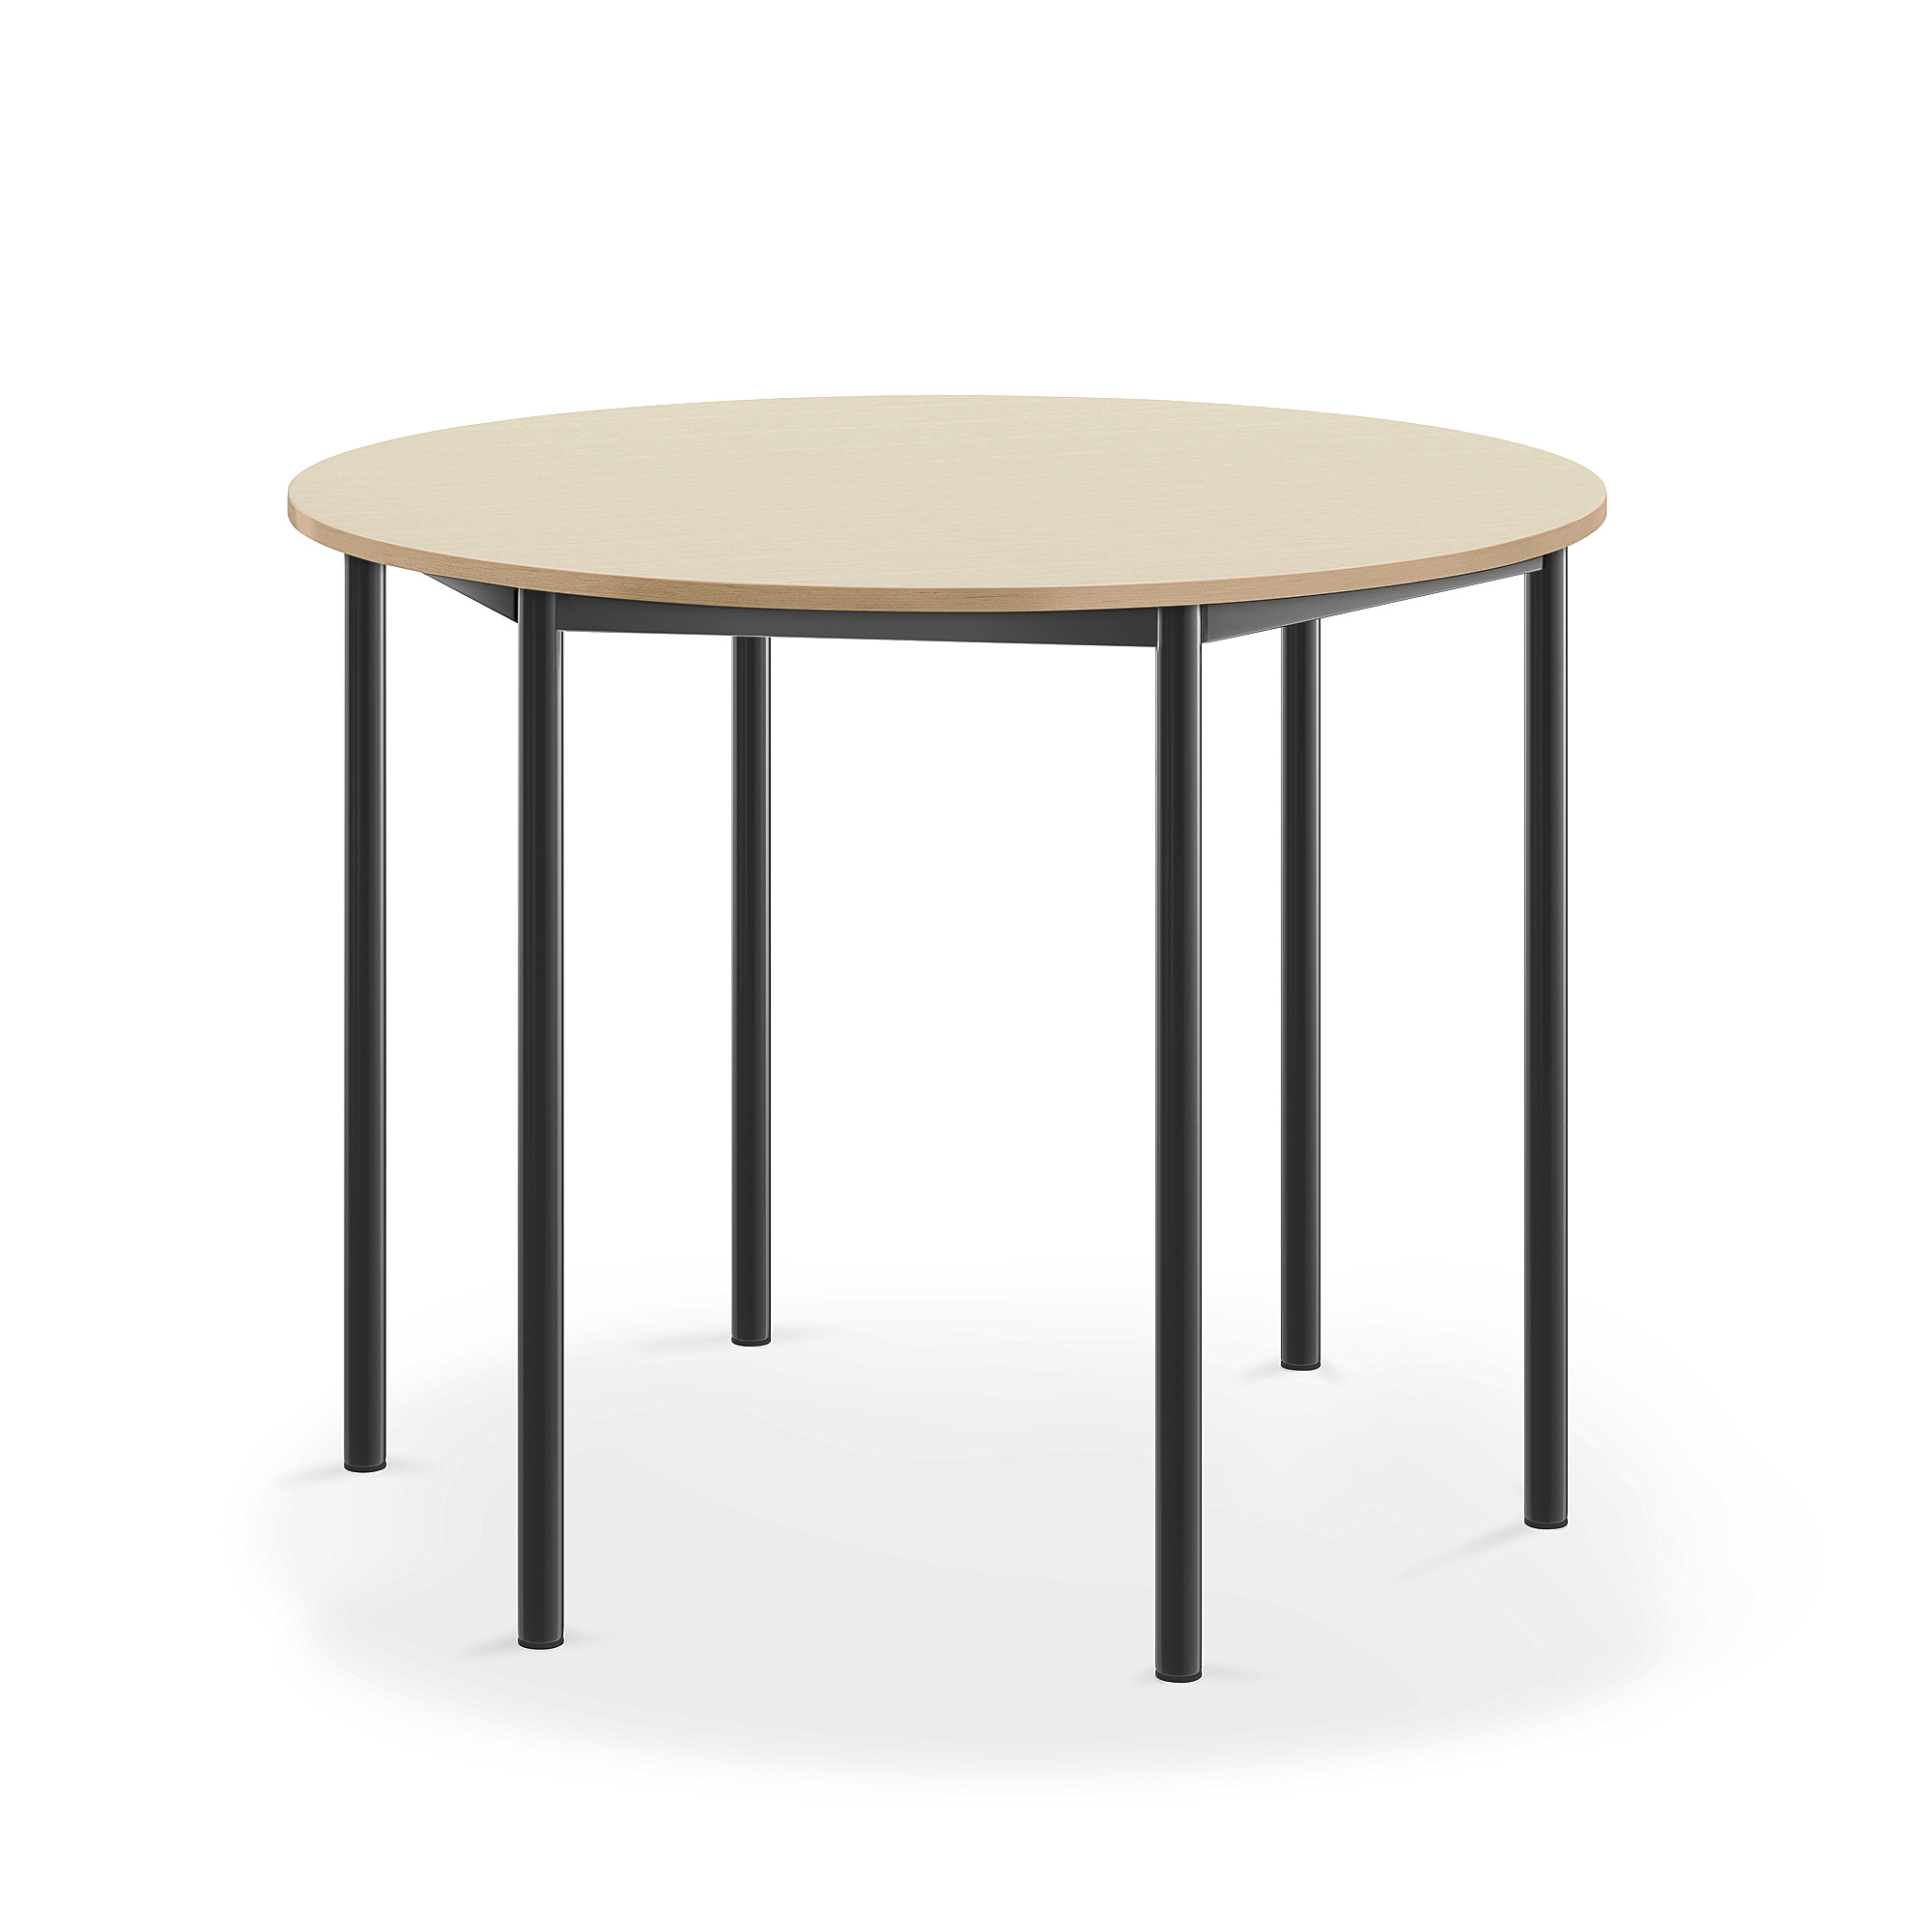 Stůl BORÅS, Ø1200x900 mm, antracitově šedé nohy, HPL deska, bříza